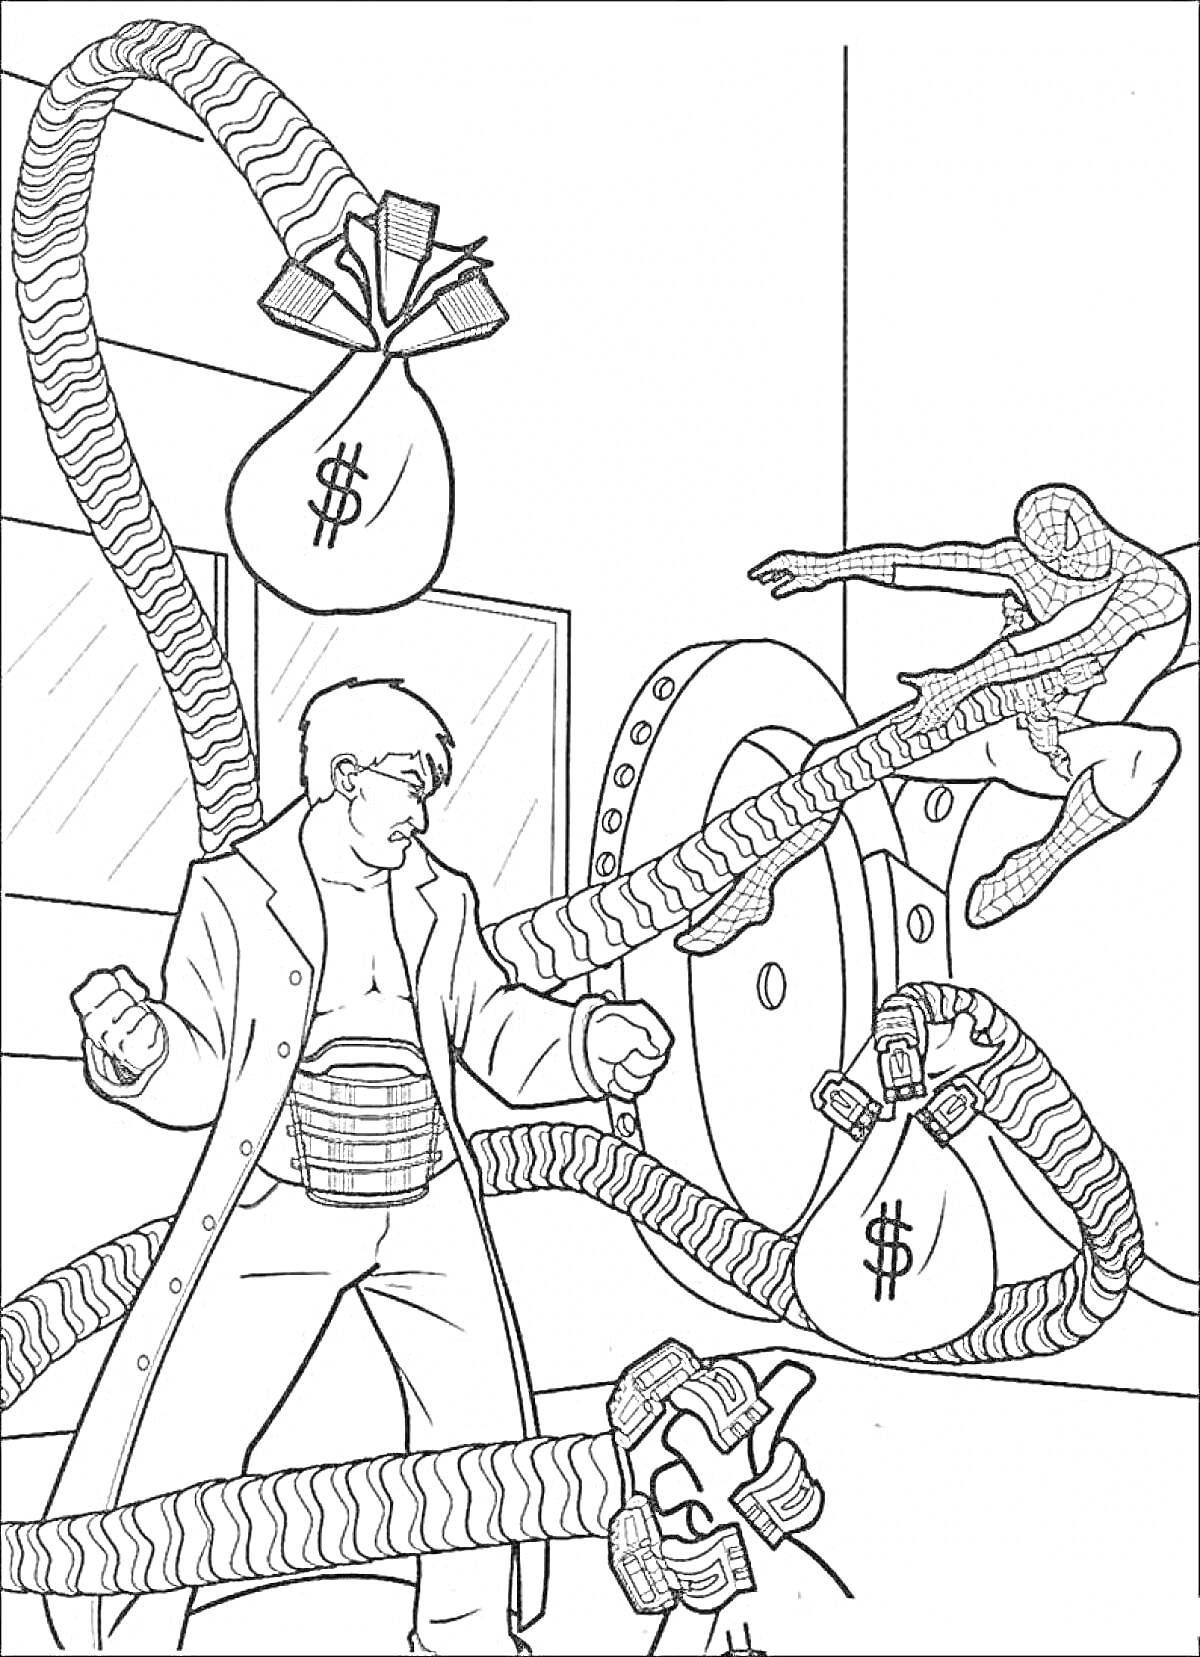 РаскраскаДоктор Осьминог с деньгами, сражается с человеком-пауком у сейфа